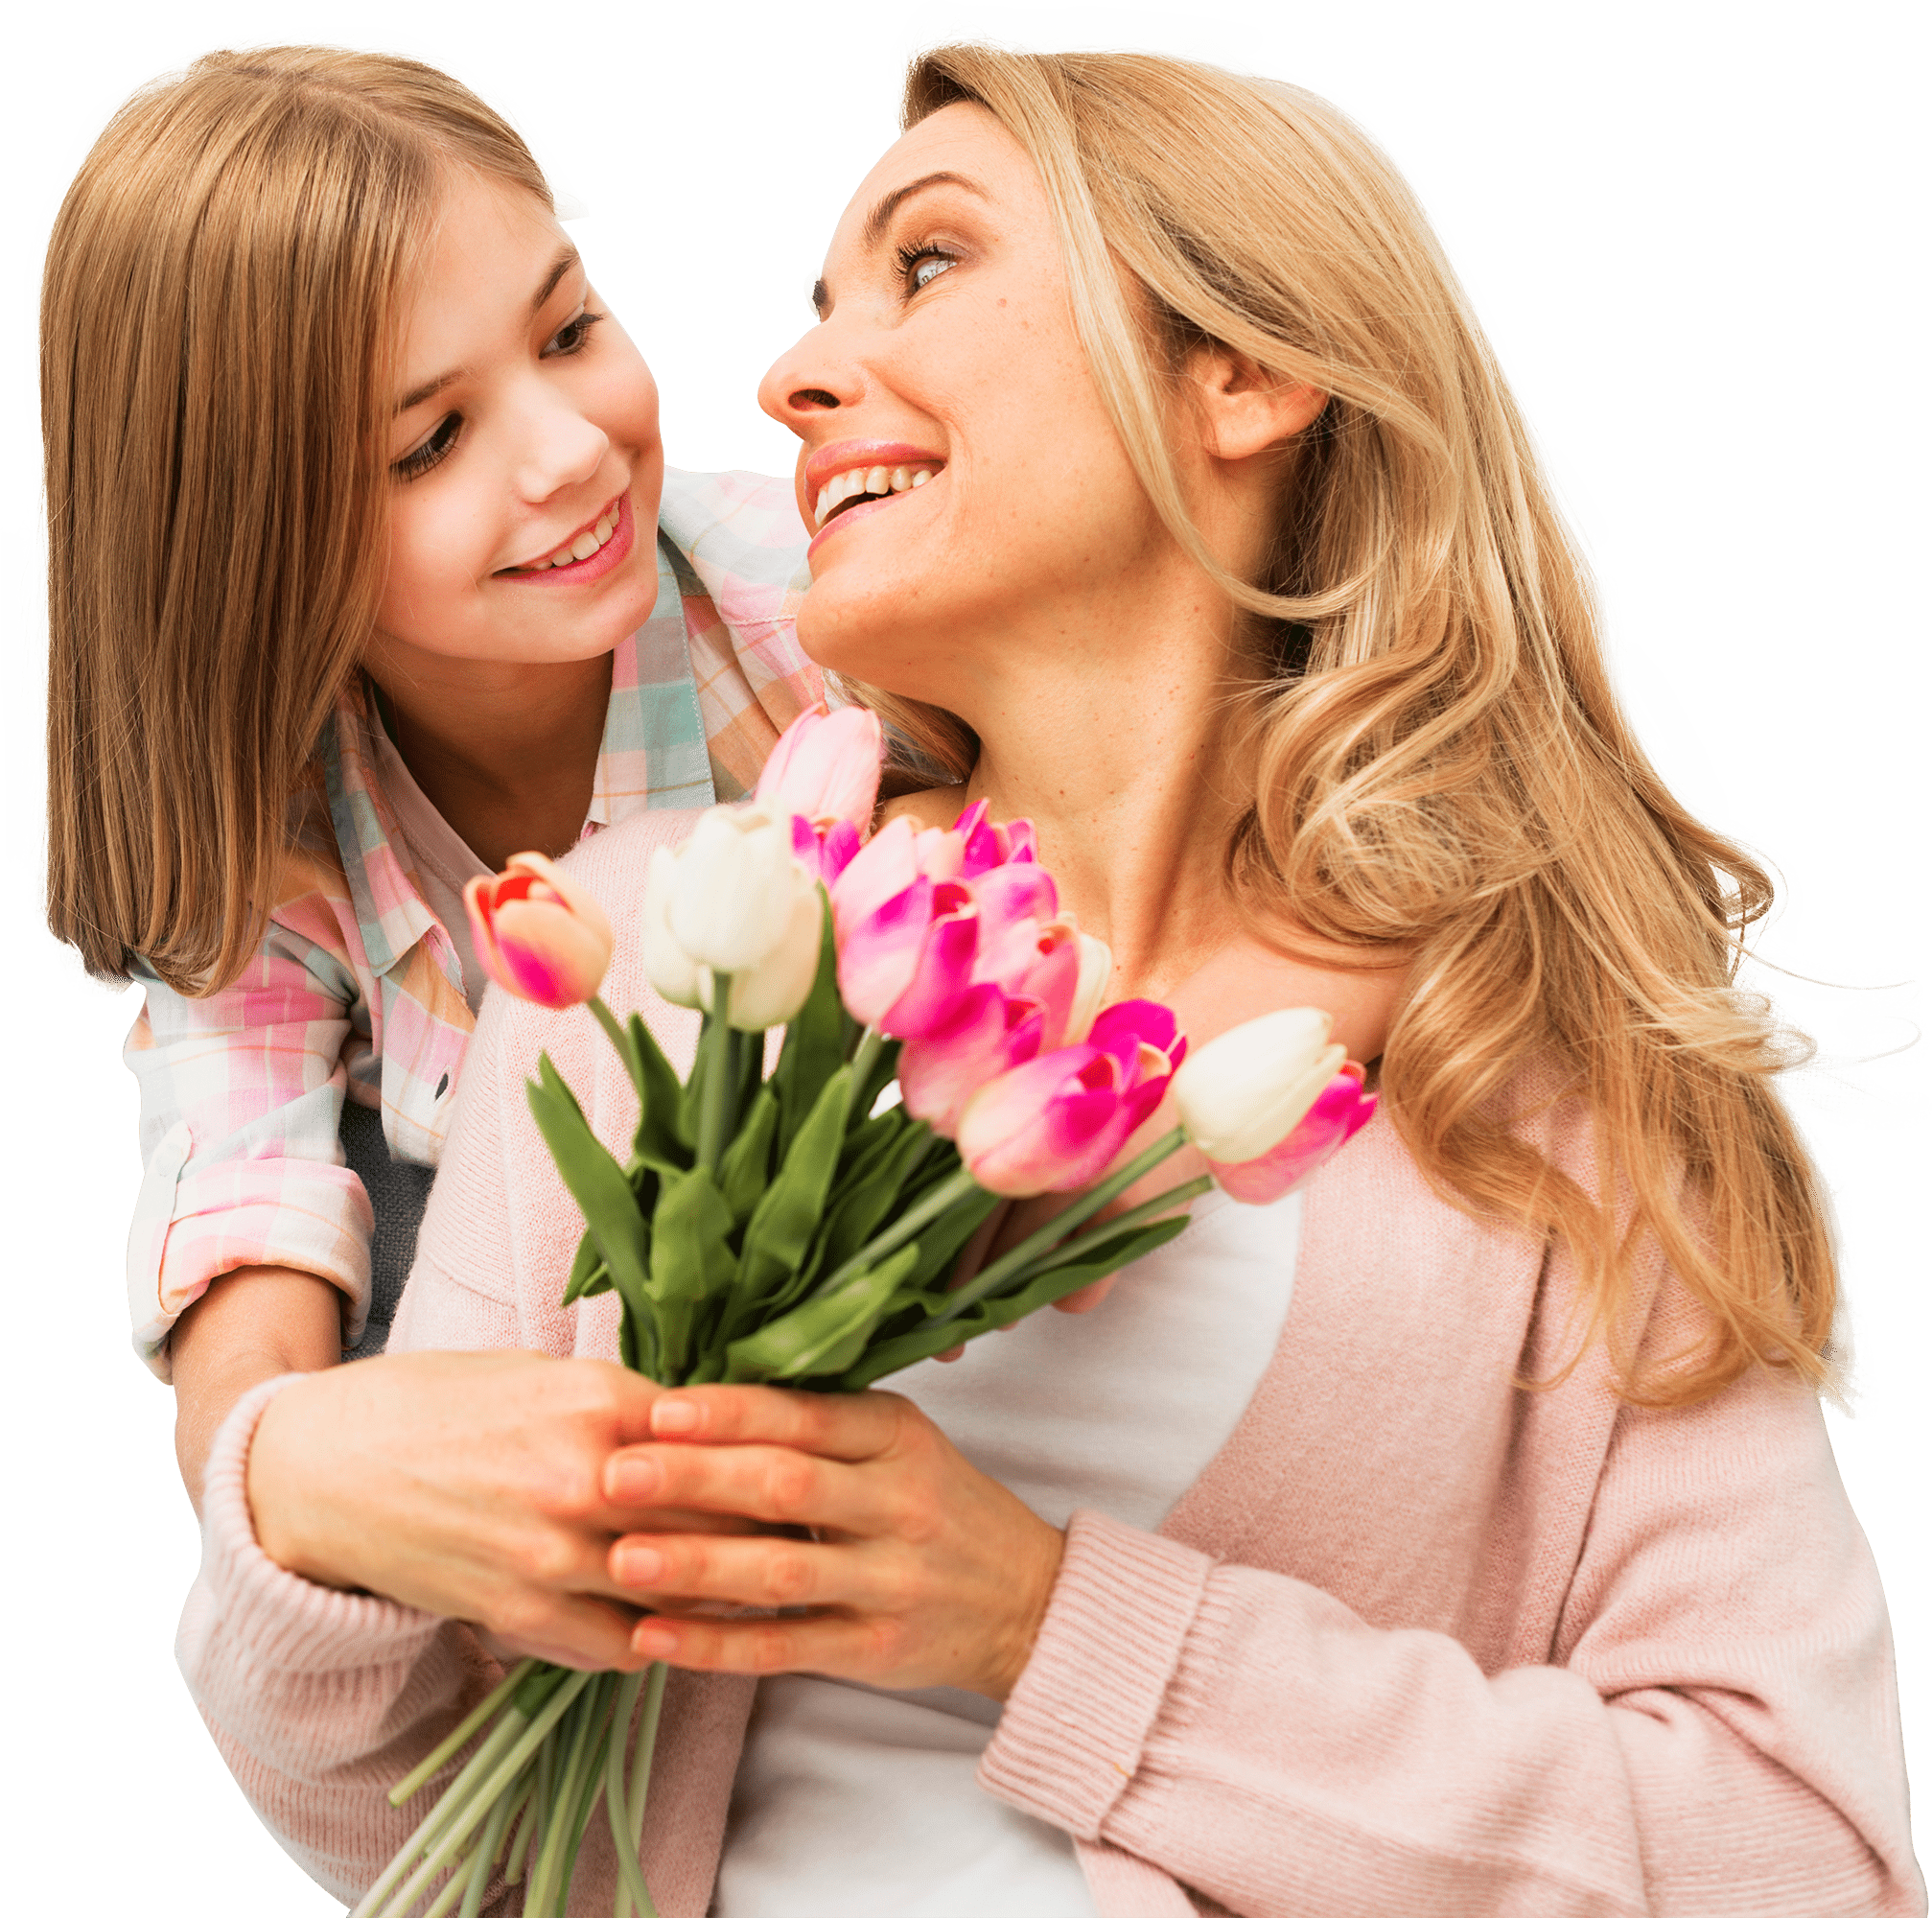 Цветы маме и дочке. Празднование дня матери. Цветы для мамы. Мама. Мама и дочка с тюльпанами.